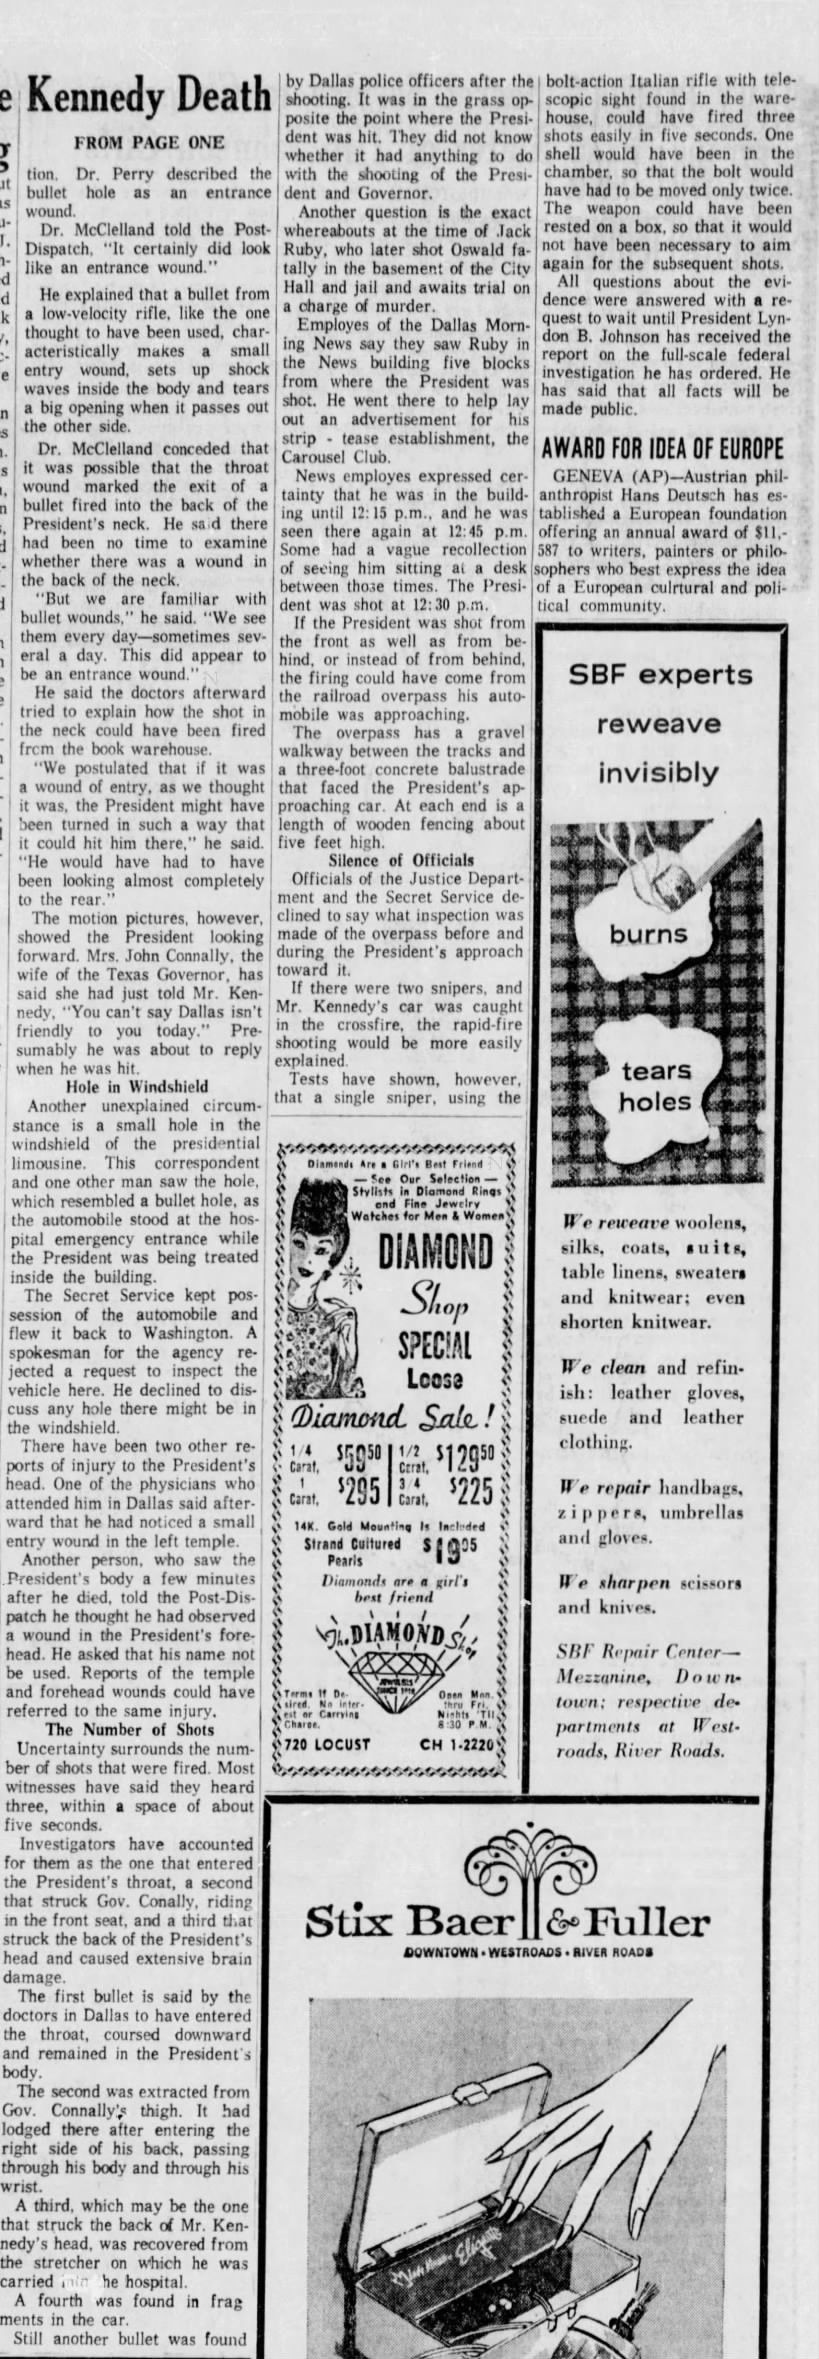 Richard Dudman St Louis Post Dispatch 12/1/63 Part 2